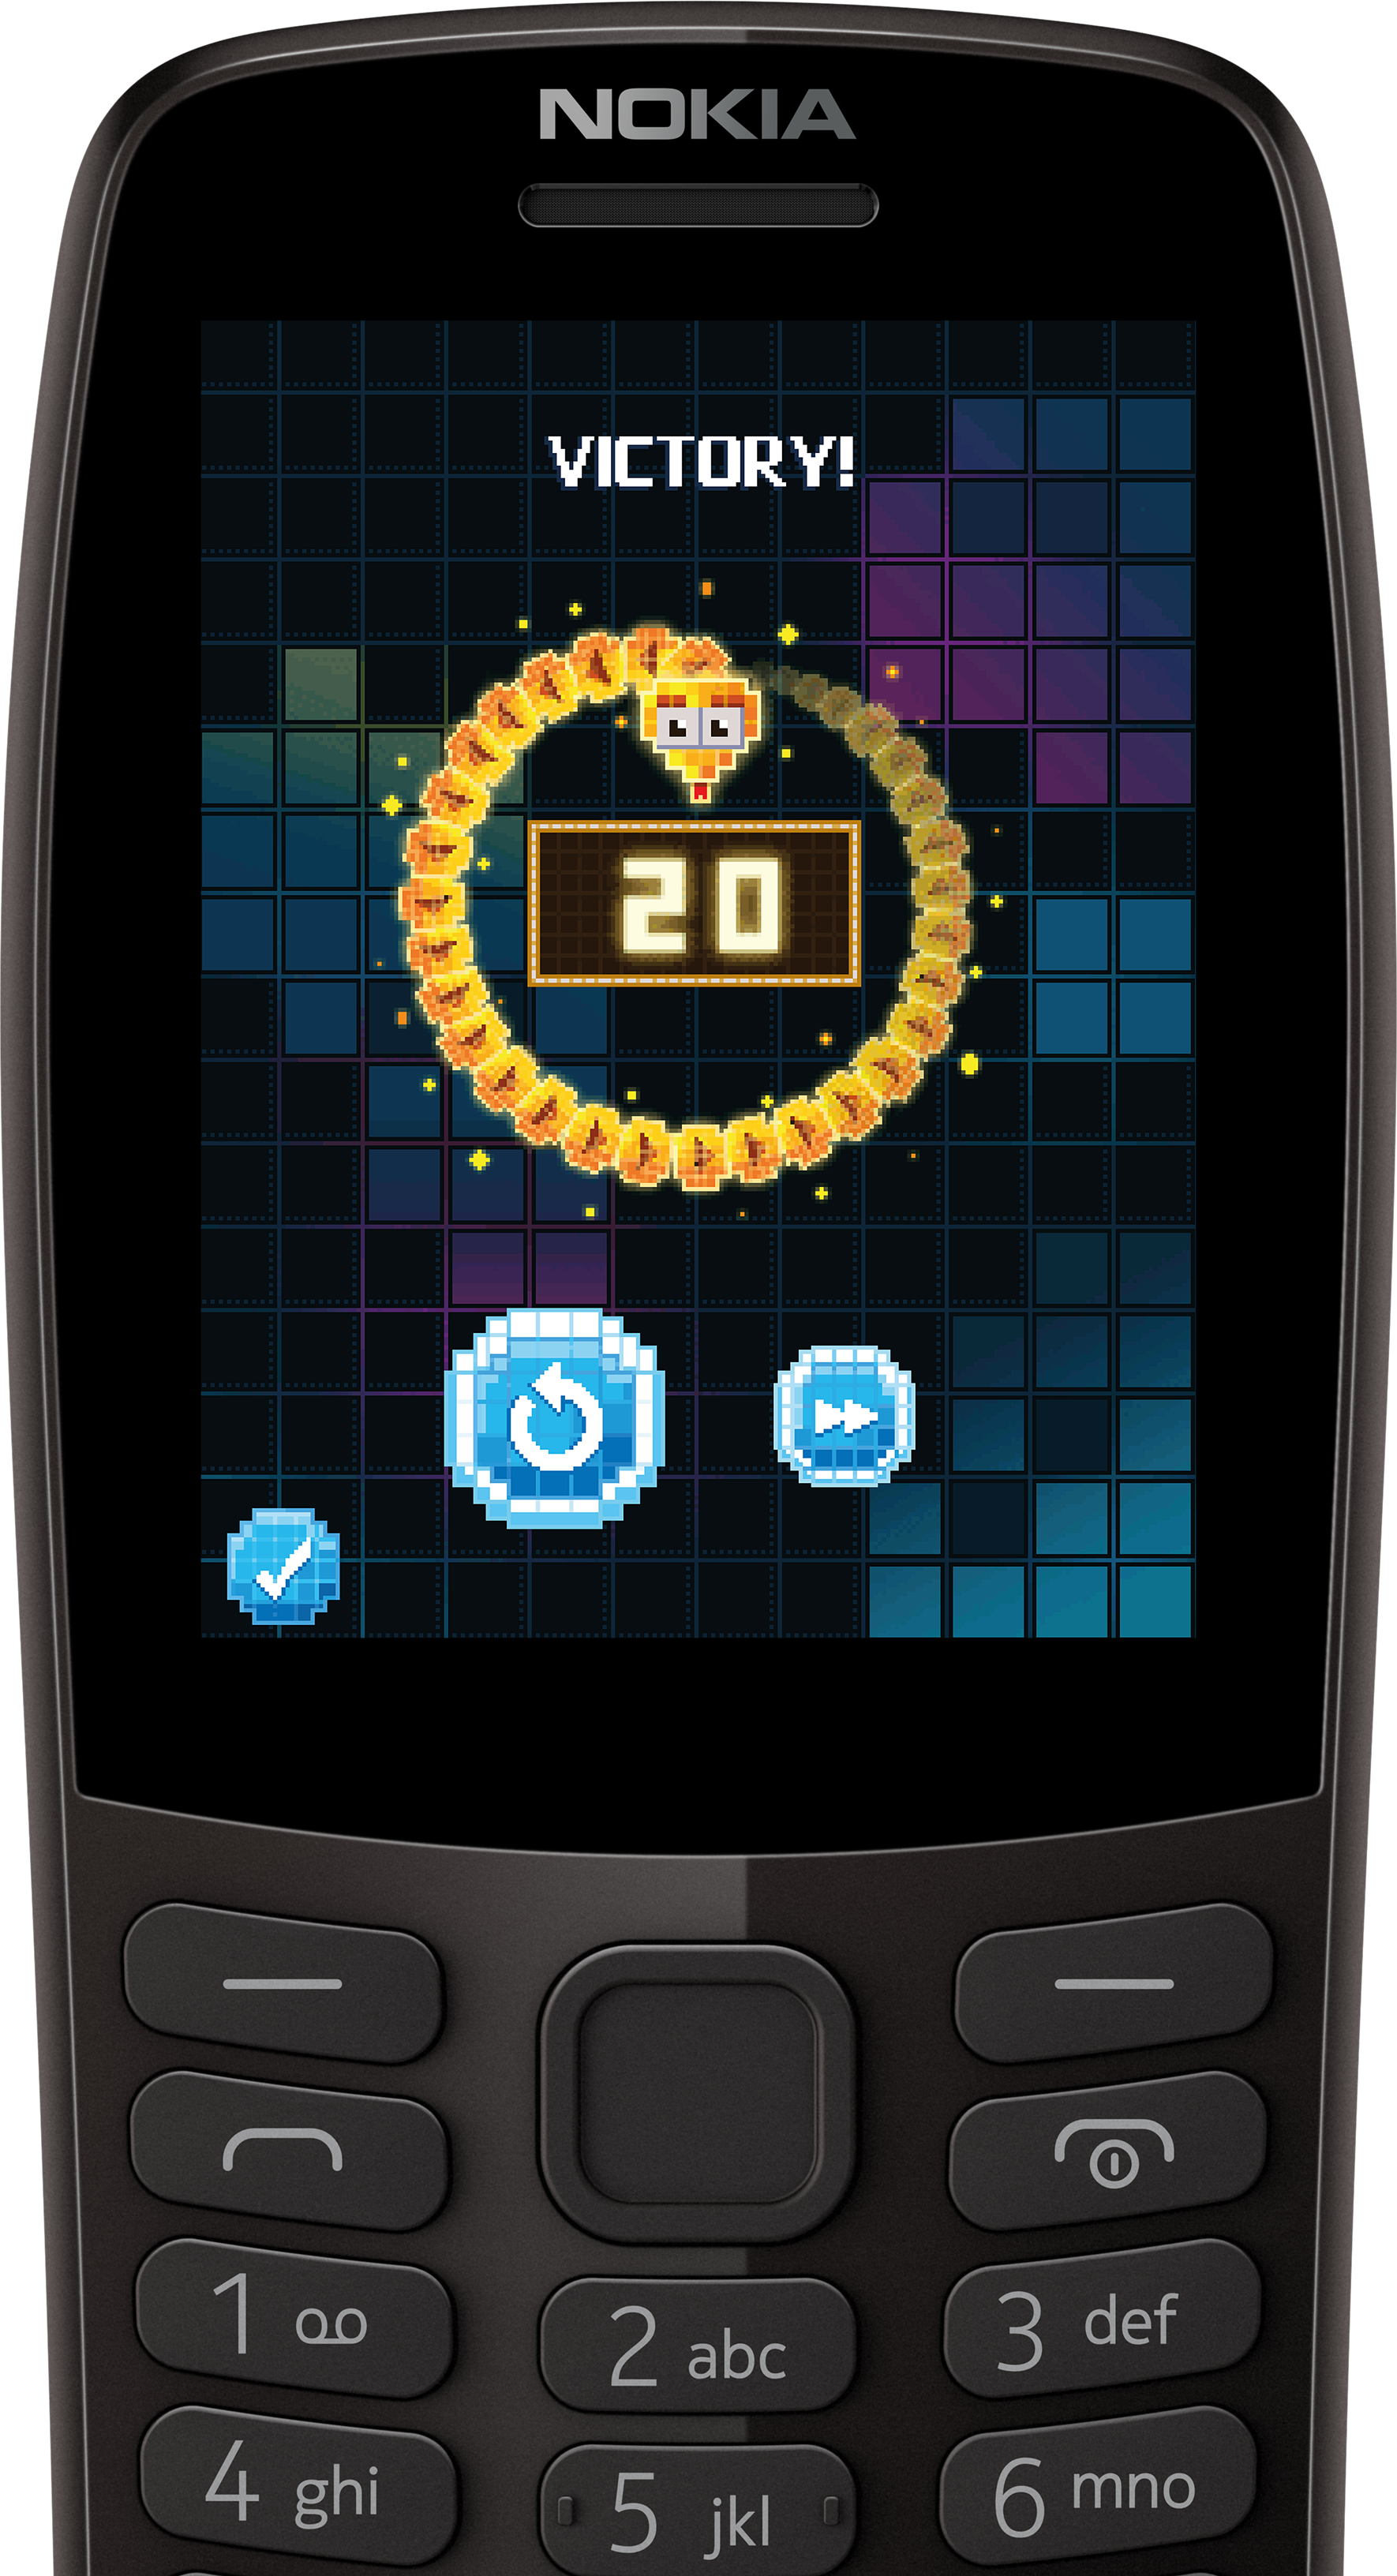 Nokia 210 mobile